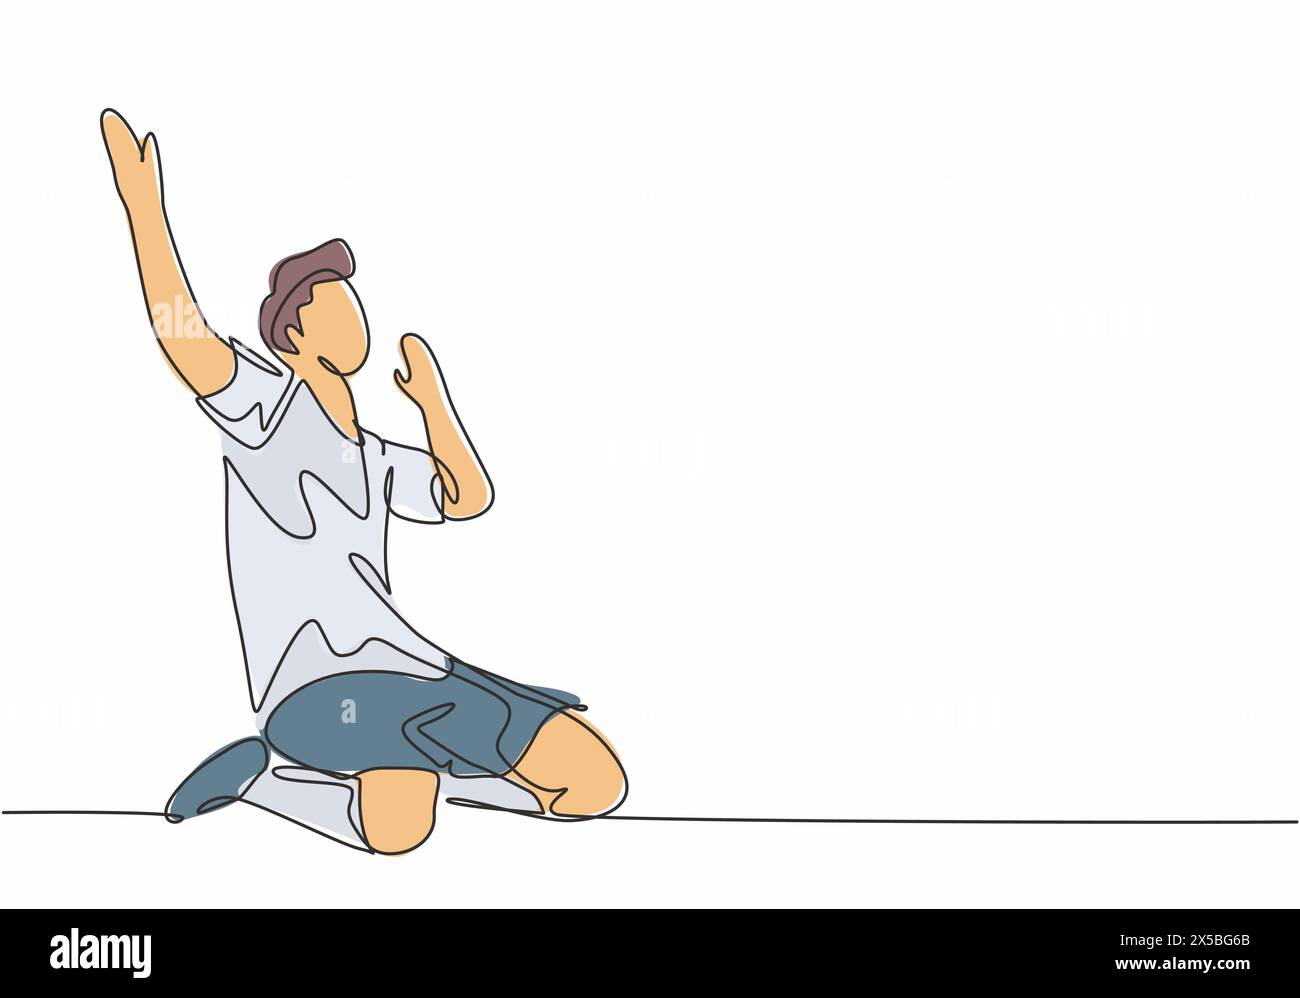 Il disegno continuo di un giocatore di calcio sportivo solleva le mani sul campo dopo aver segnato. Match calcio obiettivo celebrazione concetto uno Illustrazione Vettoriale